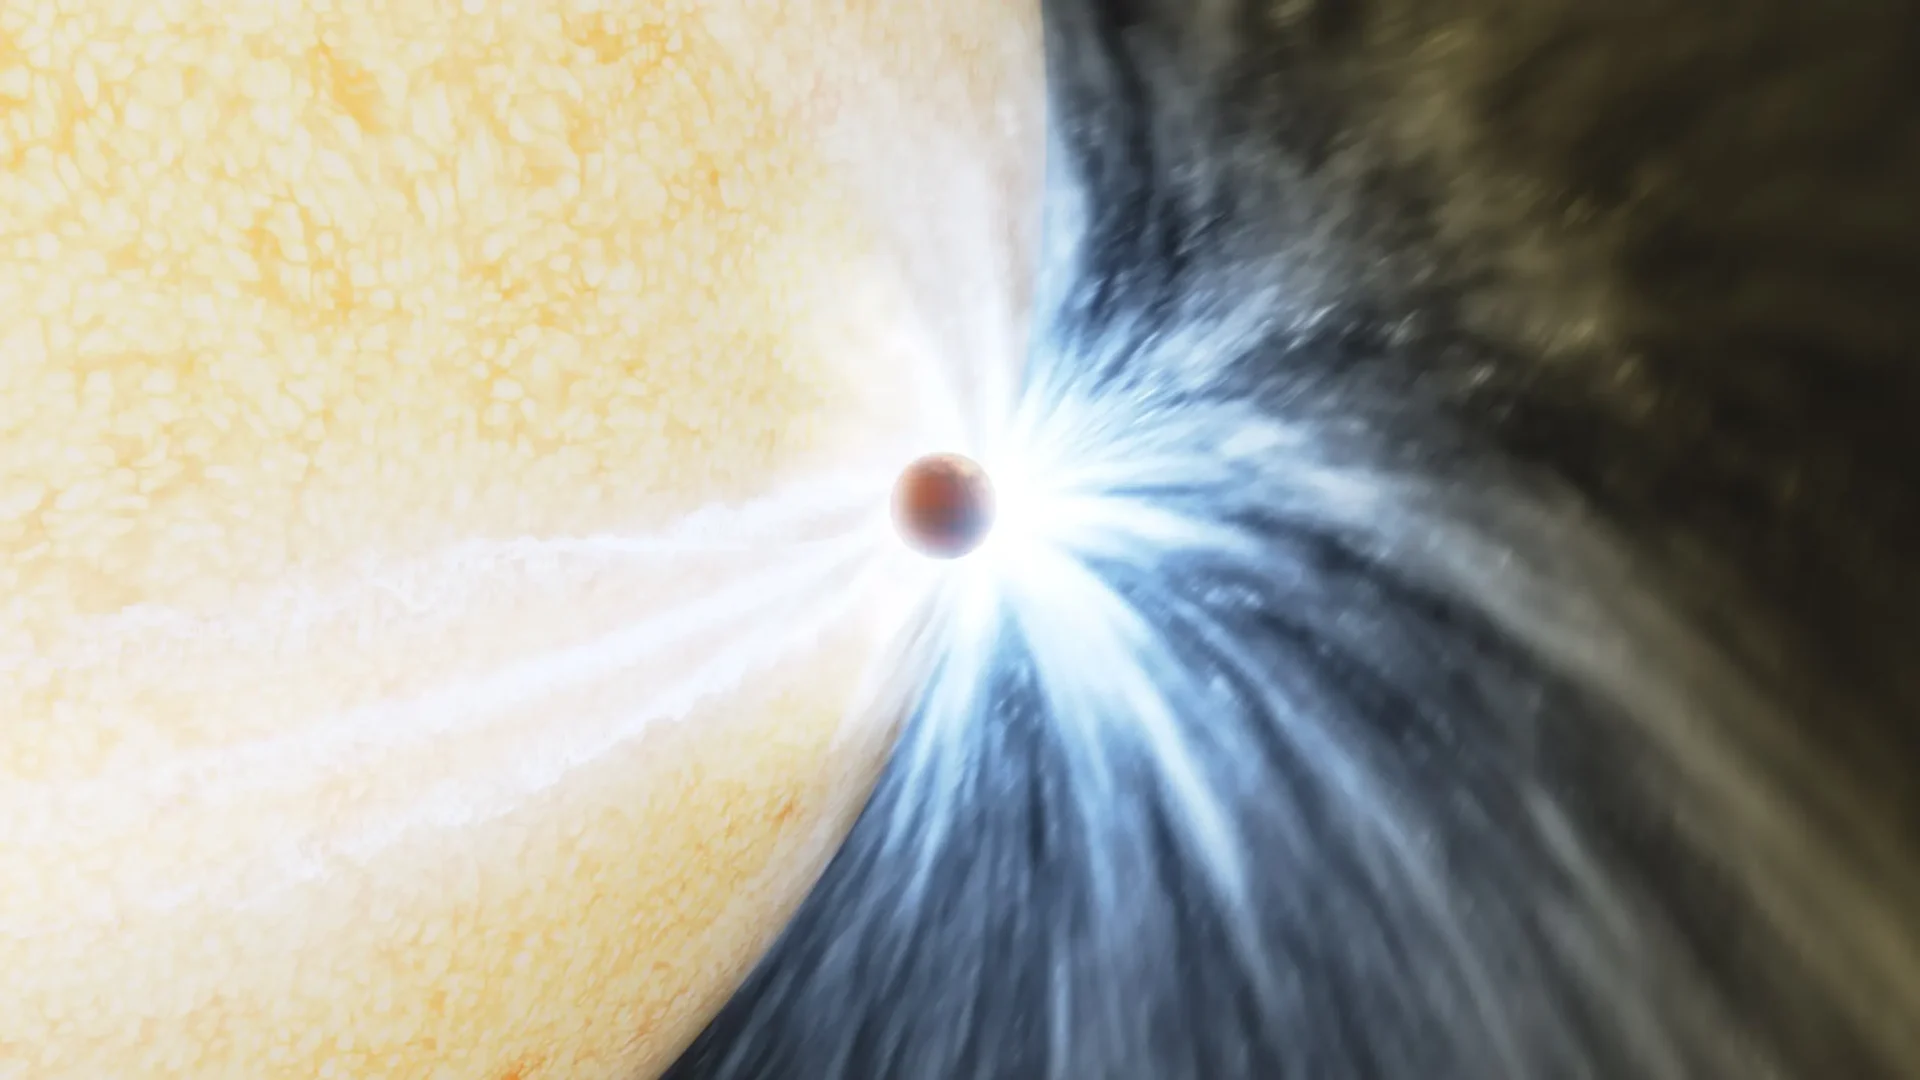 En una primicia galáctica, una estrella se traga un planeta de un solo trago